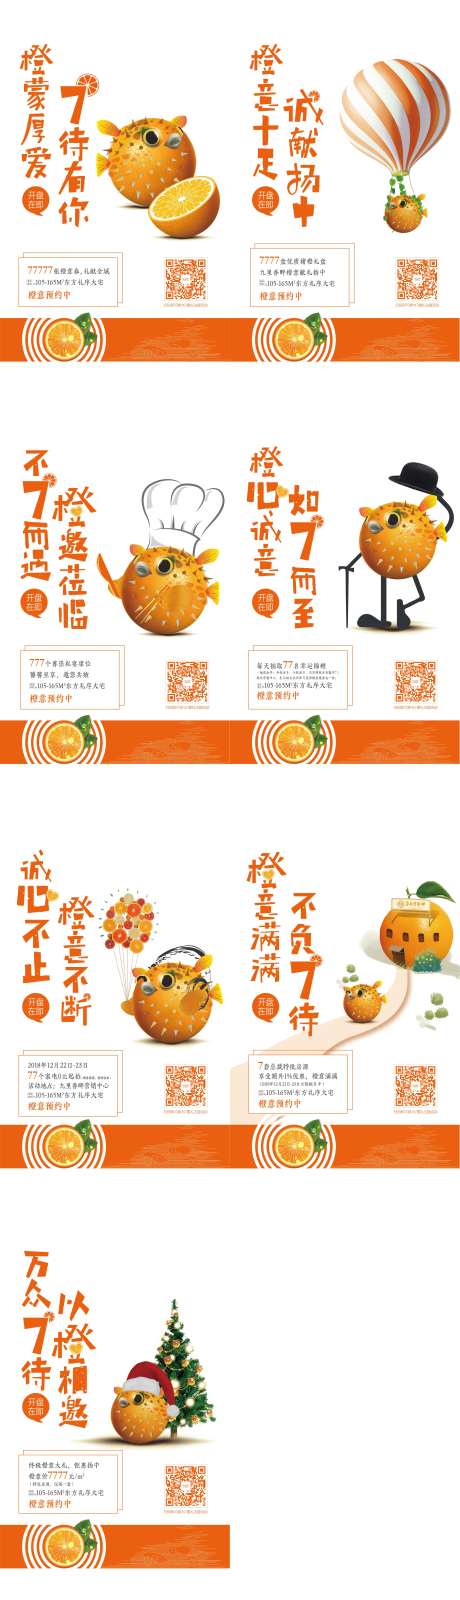 房地产橙意季系列海报